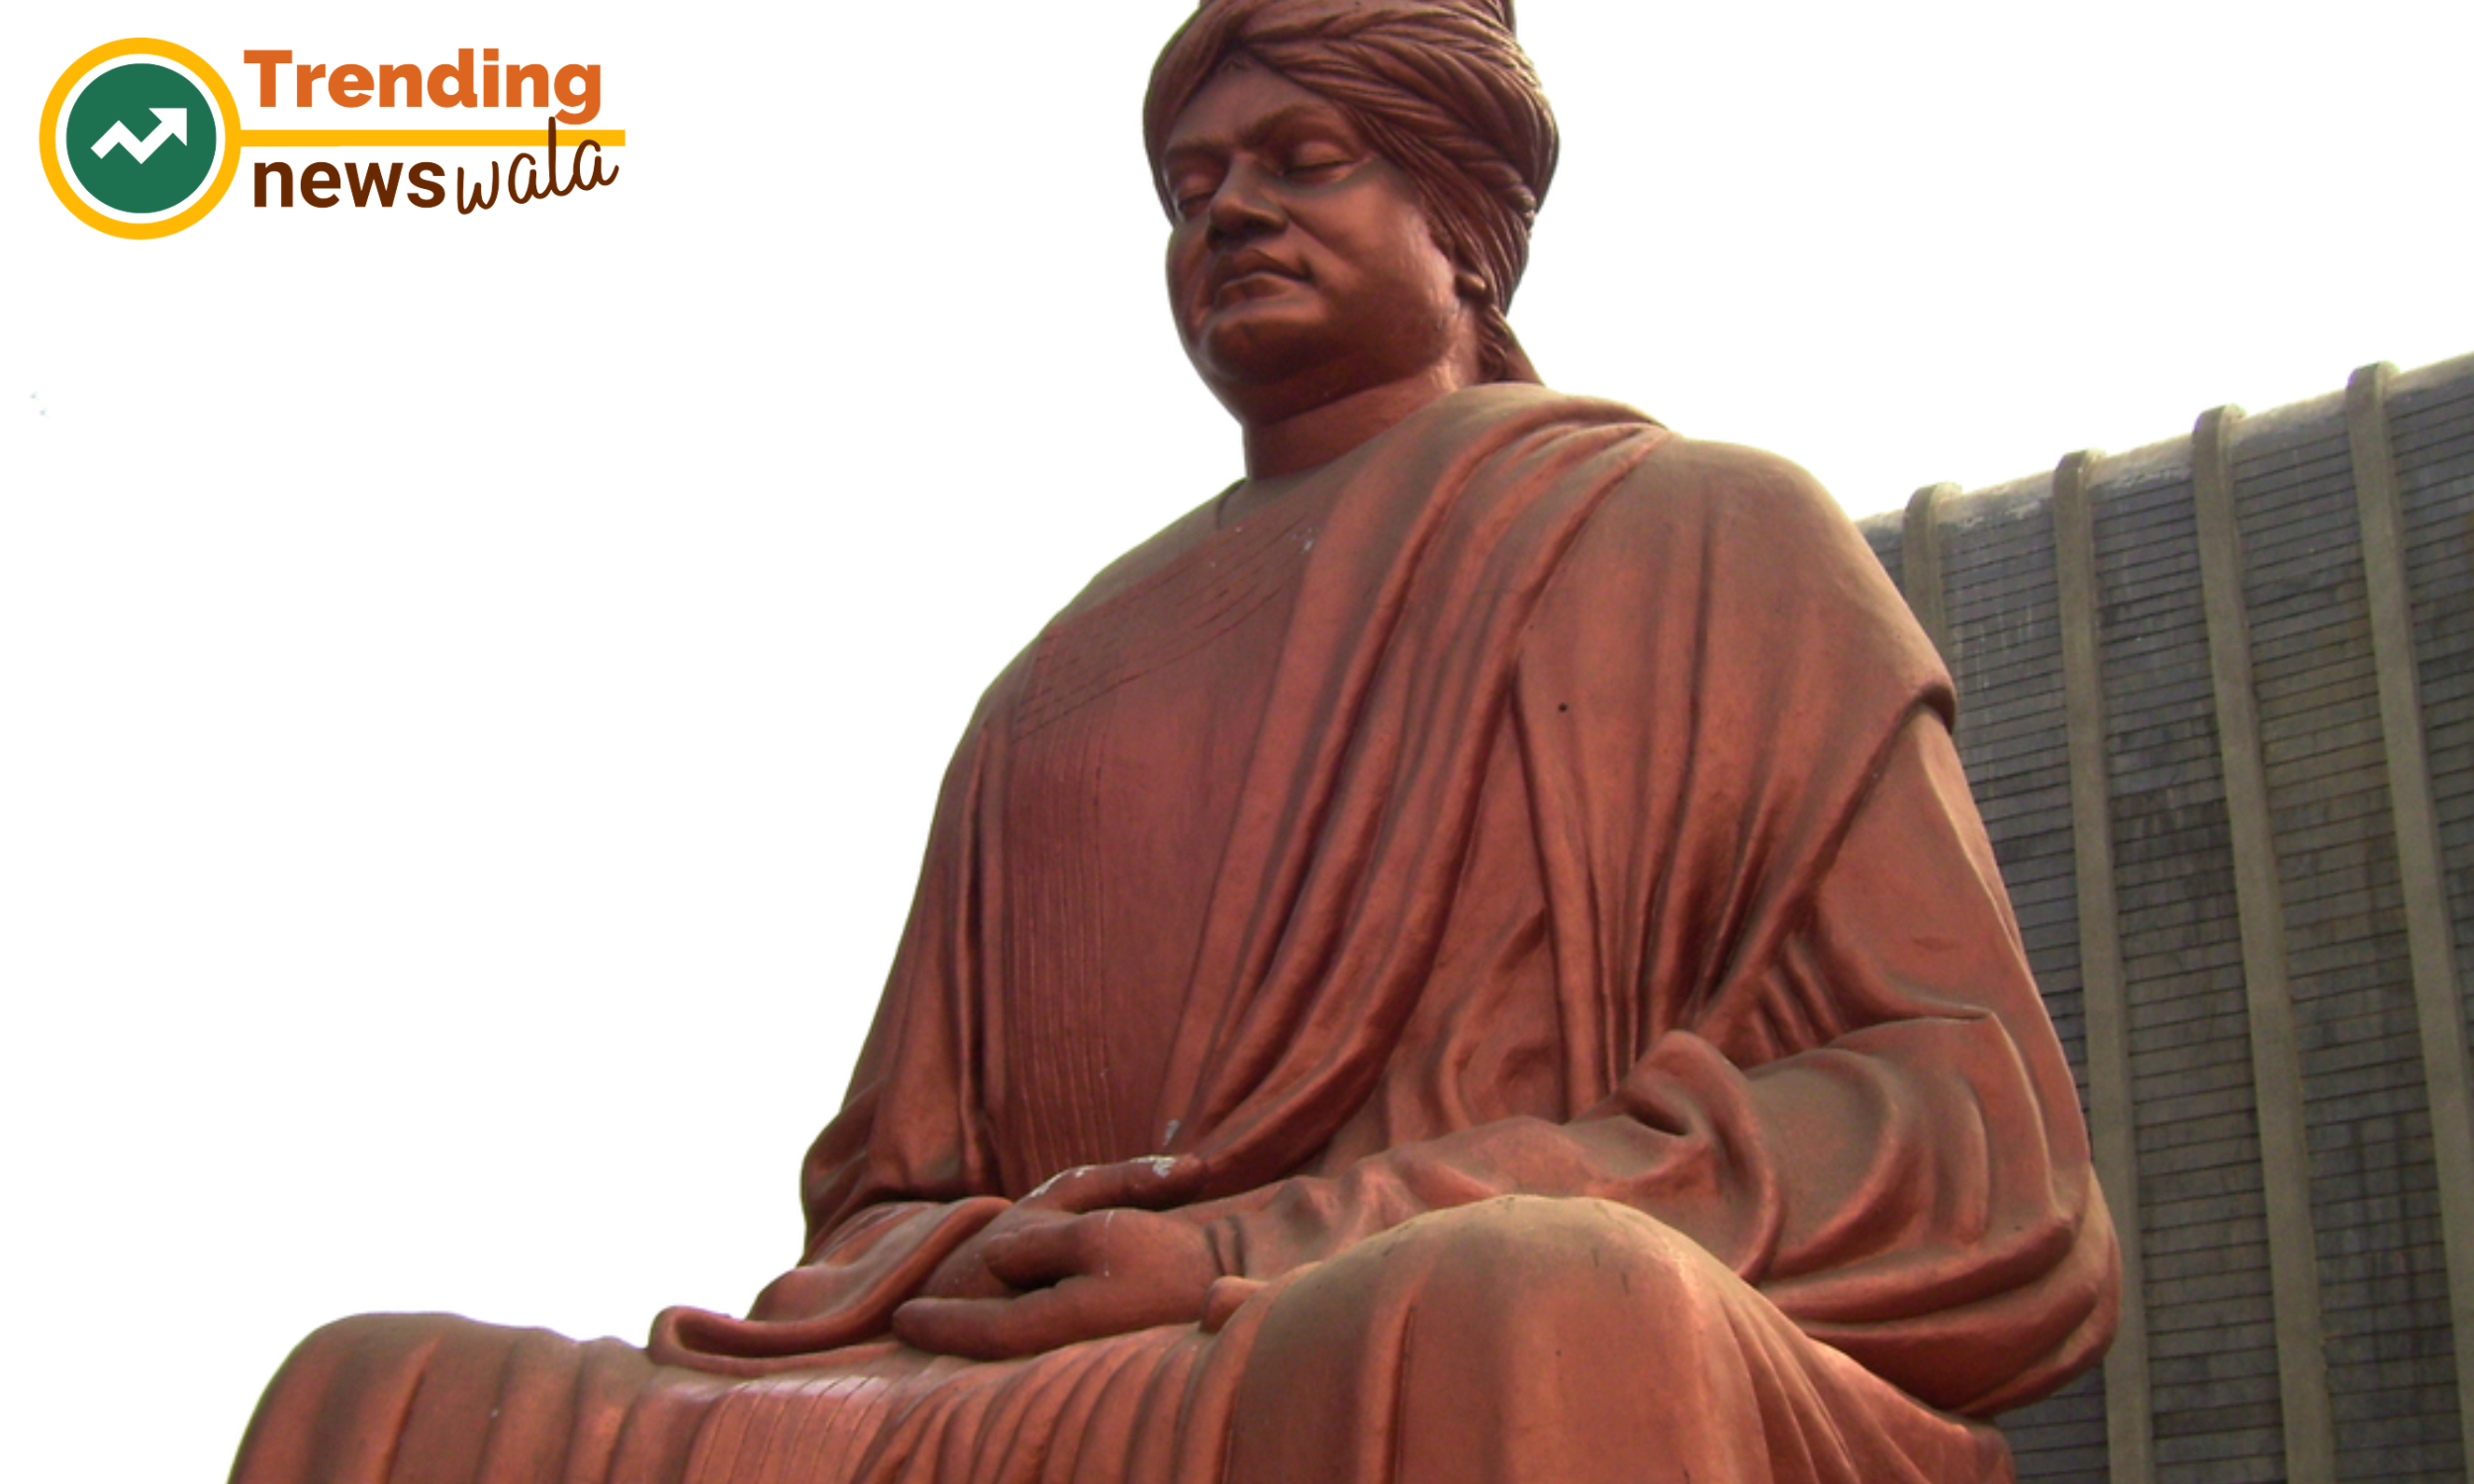 Swami Vivekananda's legacy endures through